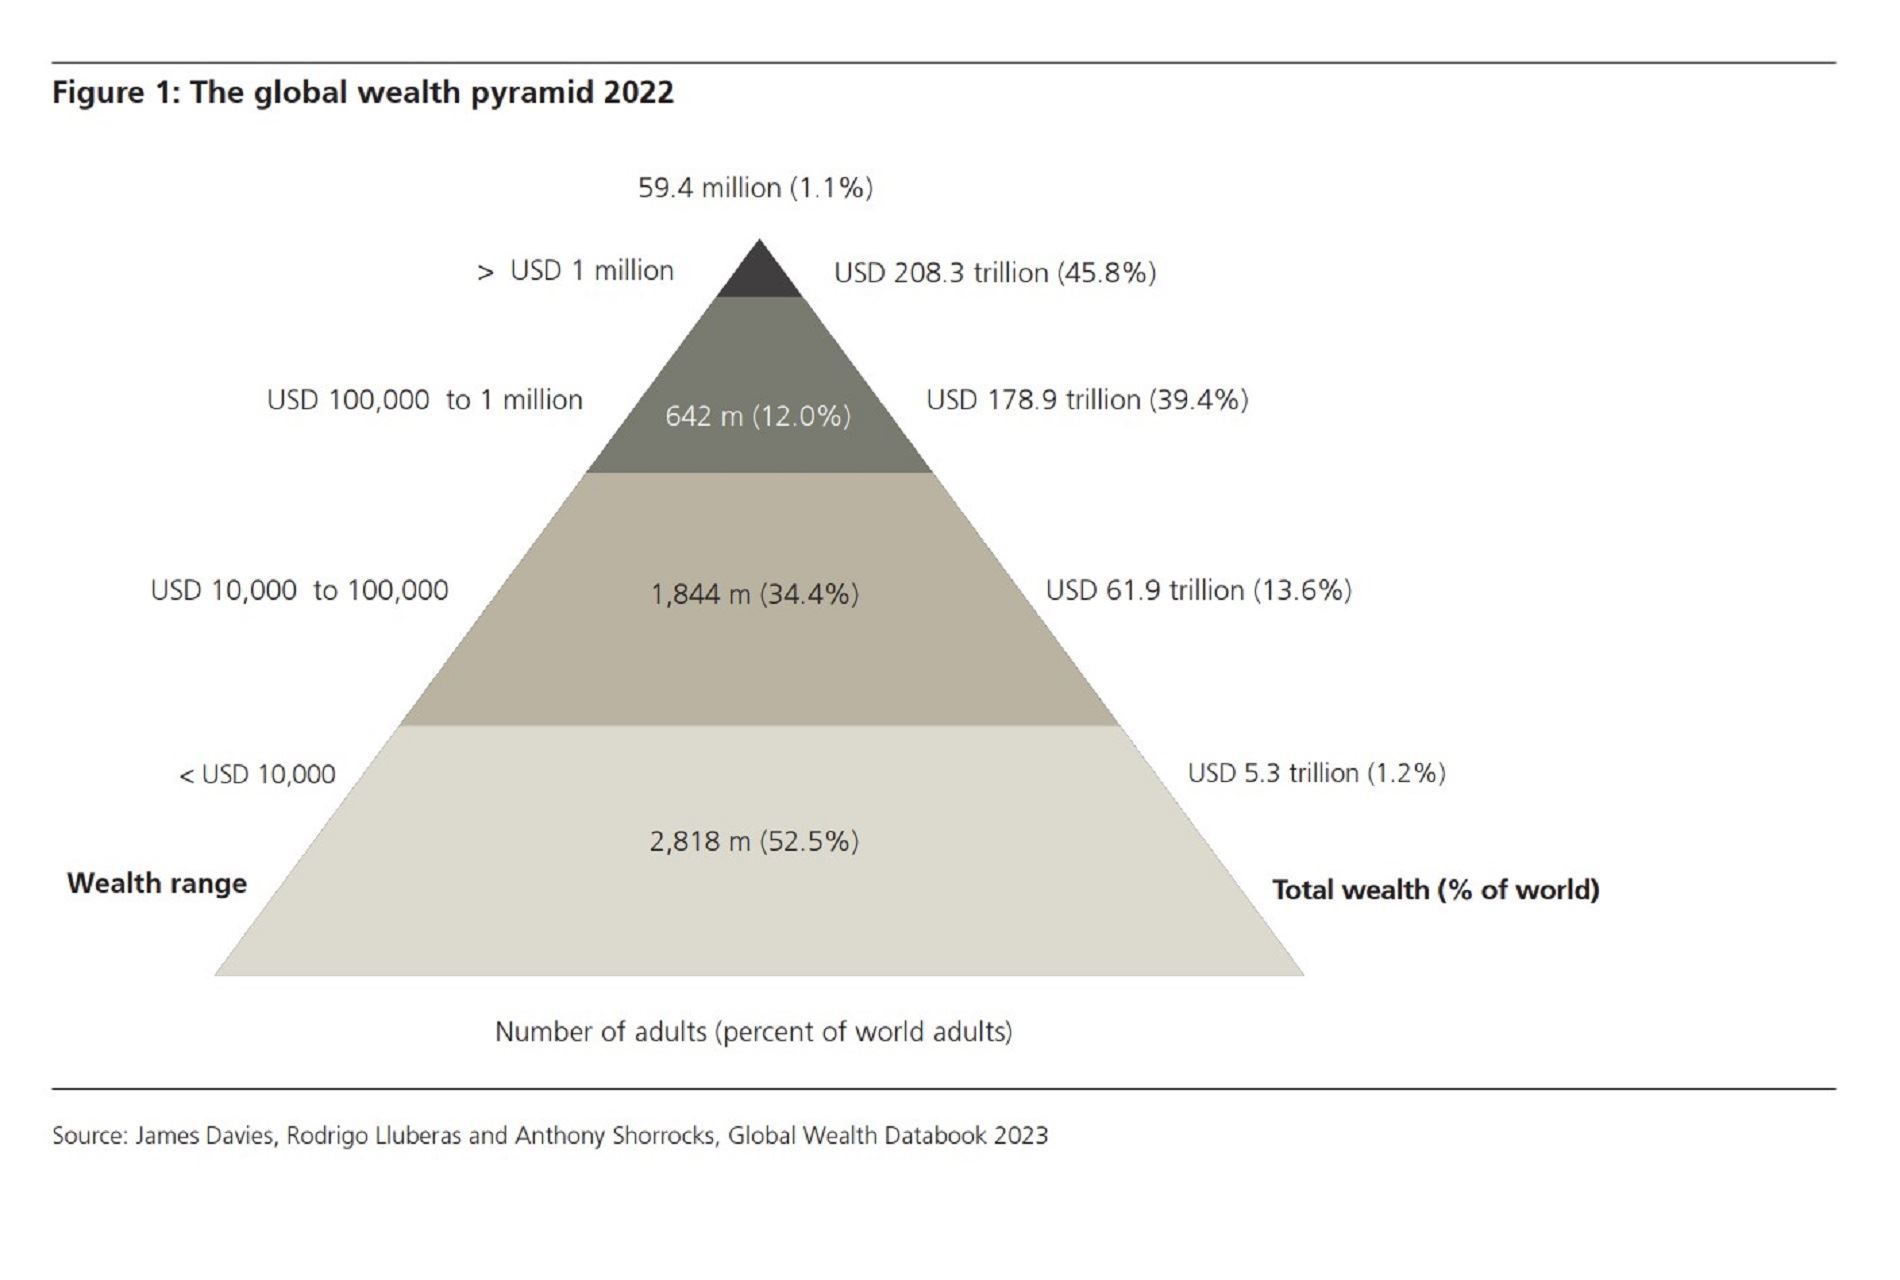 La piramide della ricchezza globale nel 2022